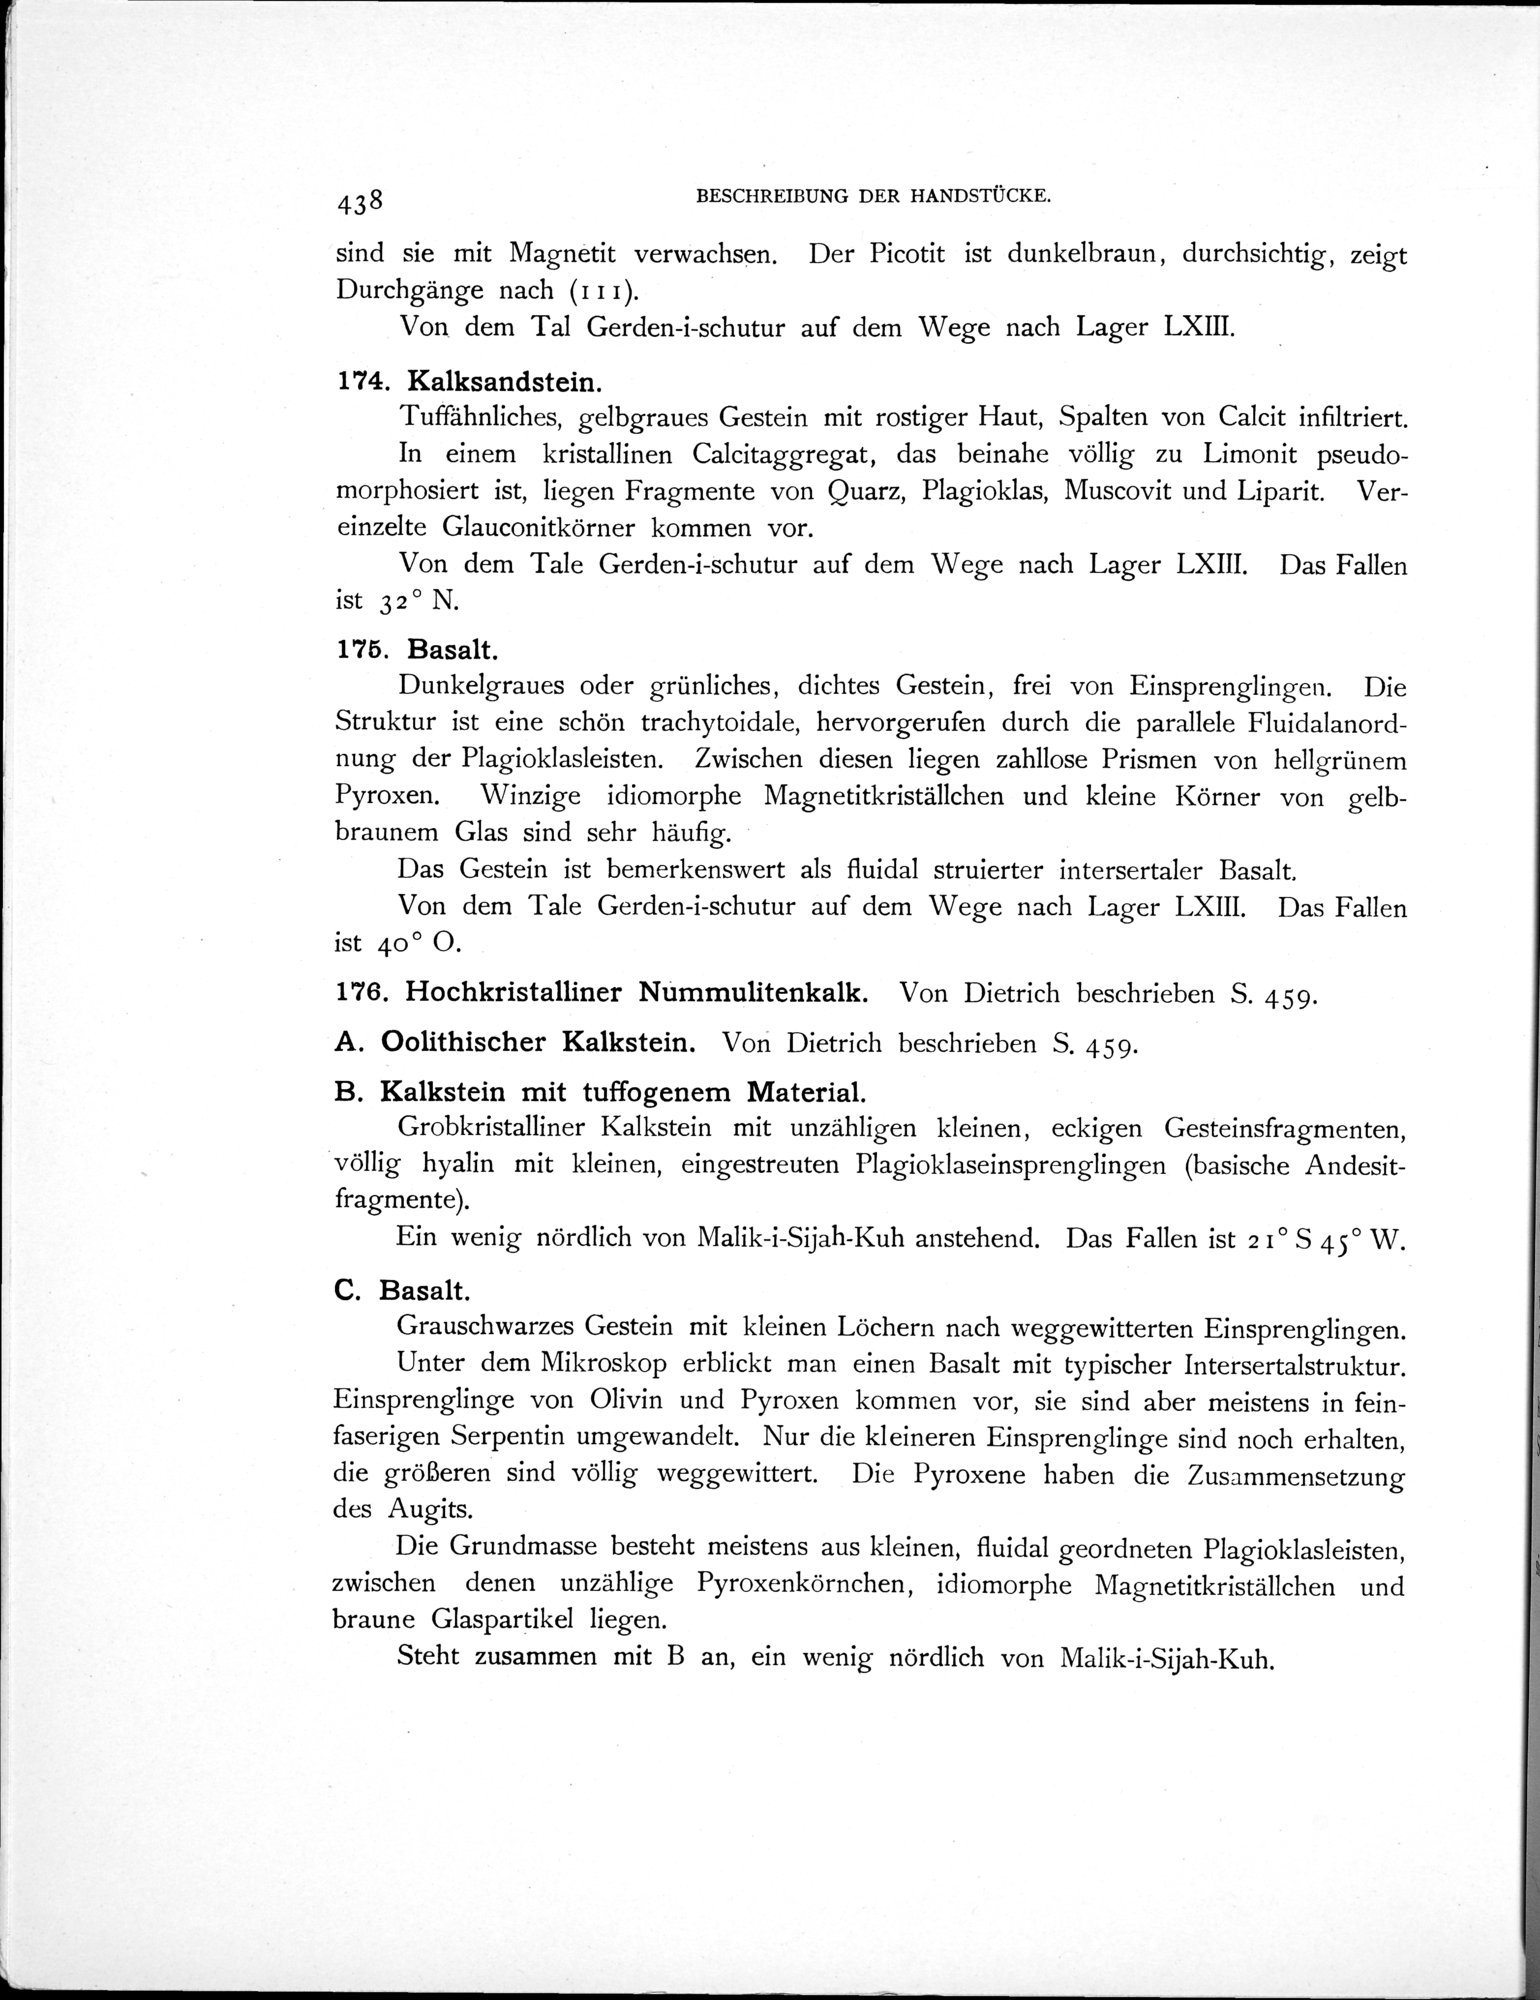 Eine Routenaufnahme durch Ostpersien : vol.2 / Page 542 (Grayscale High Resolution Image)